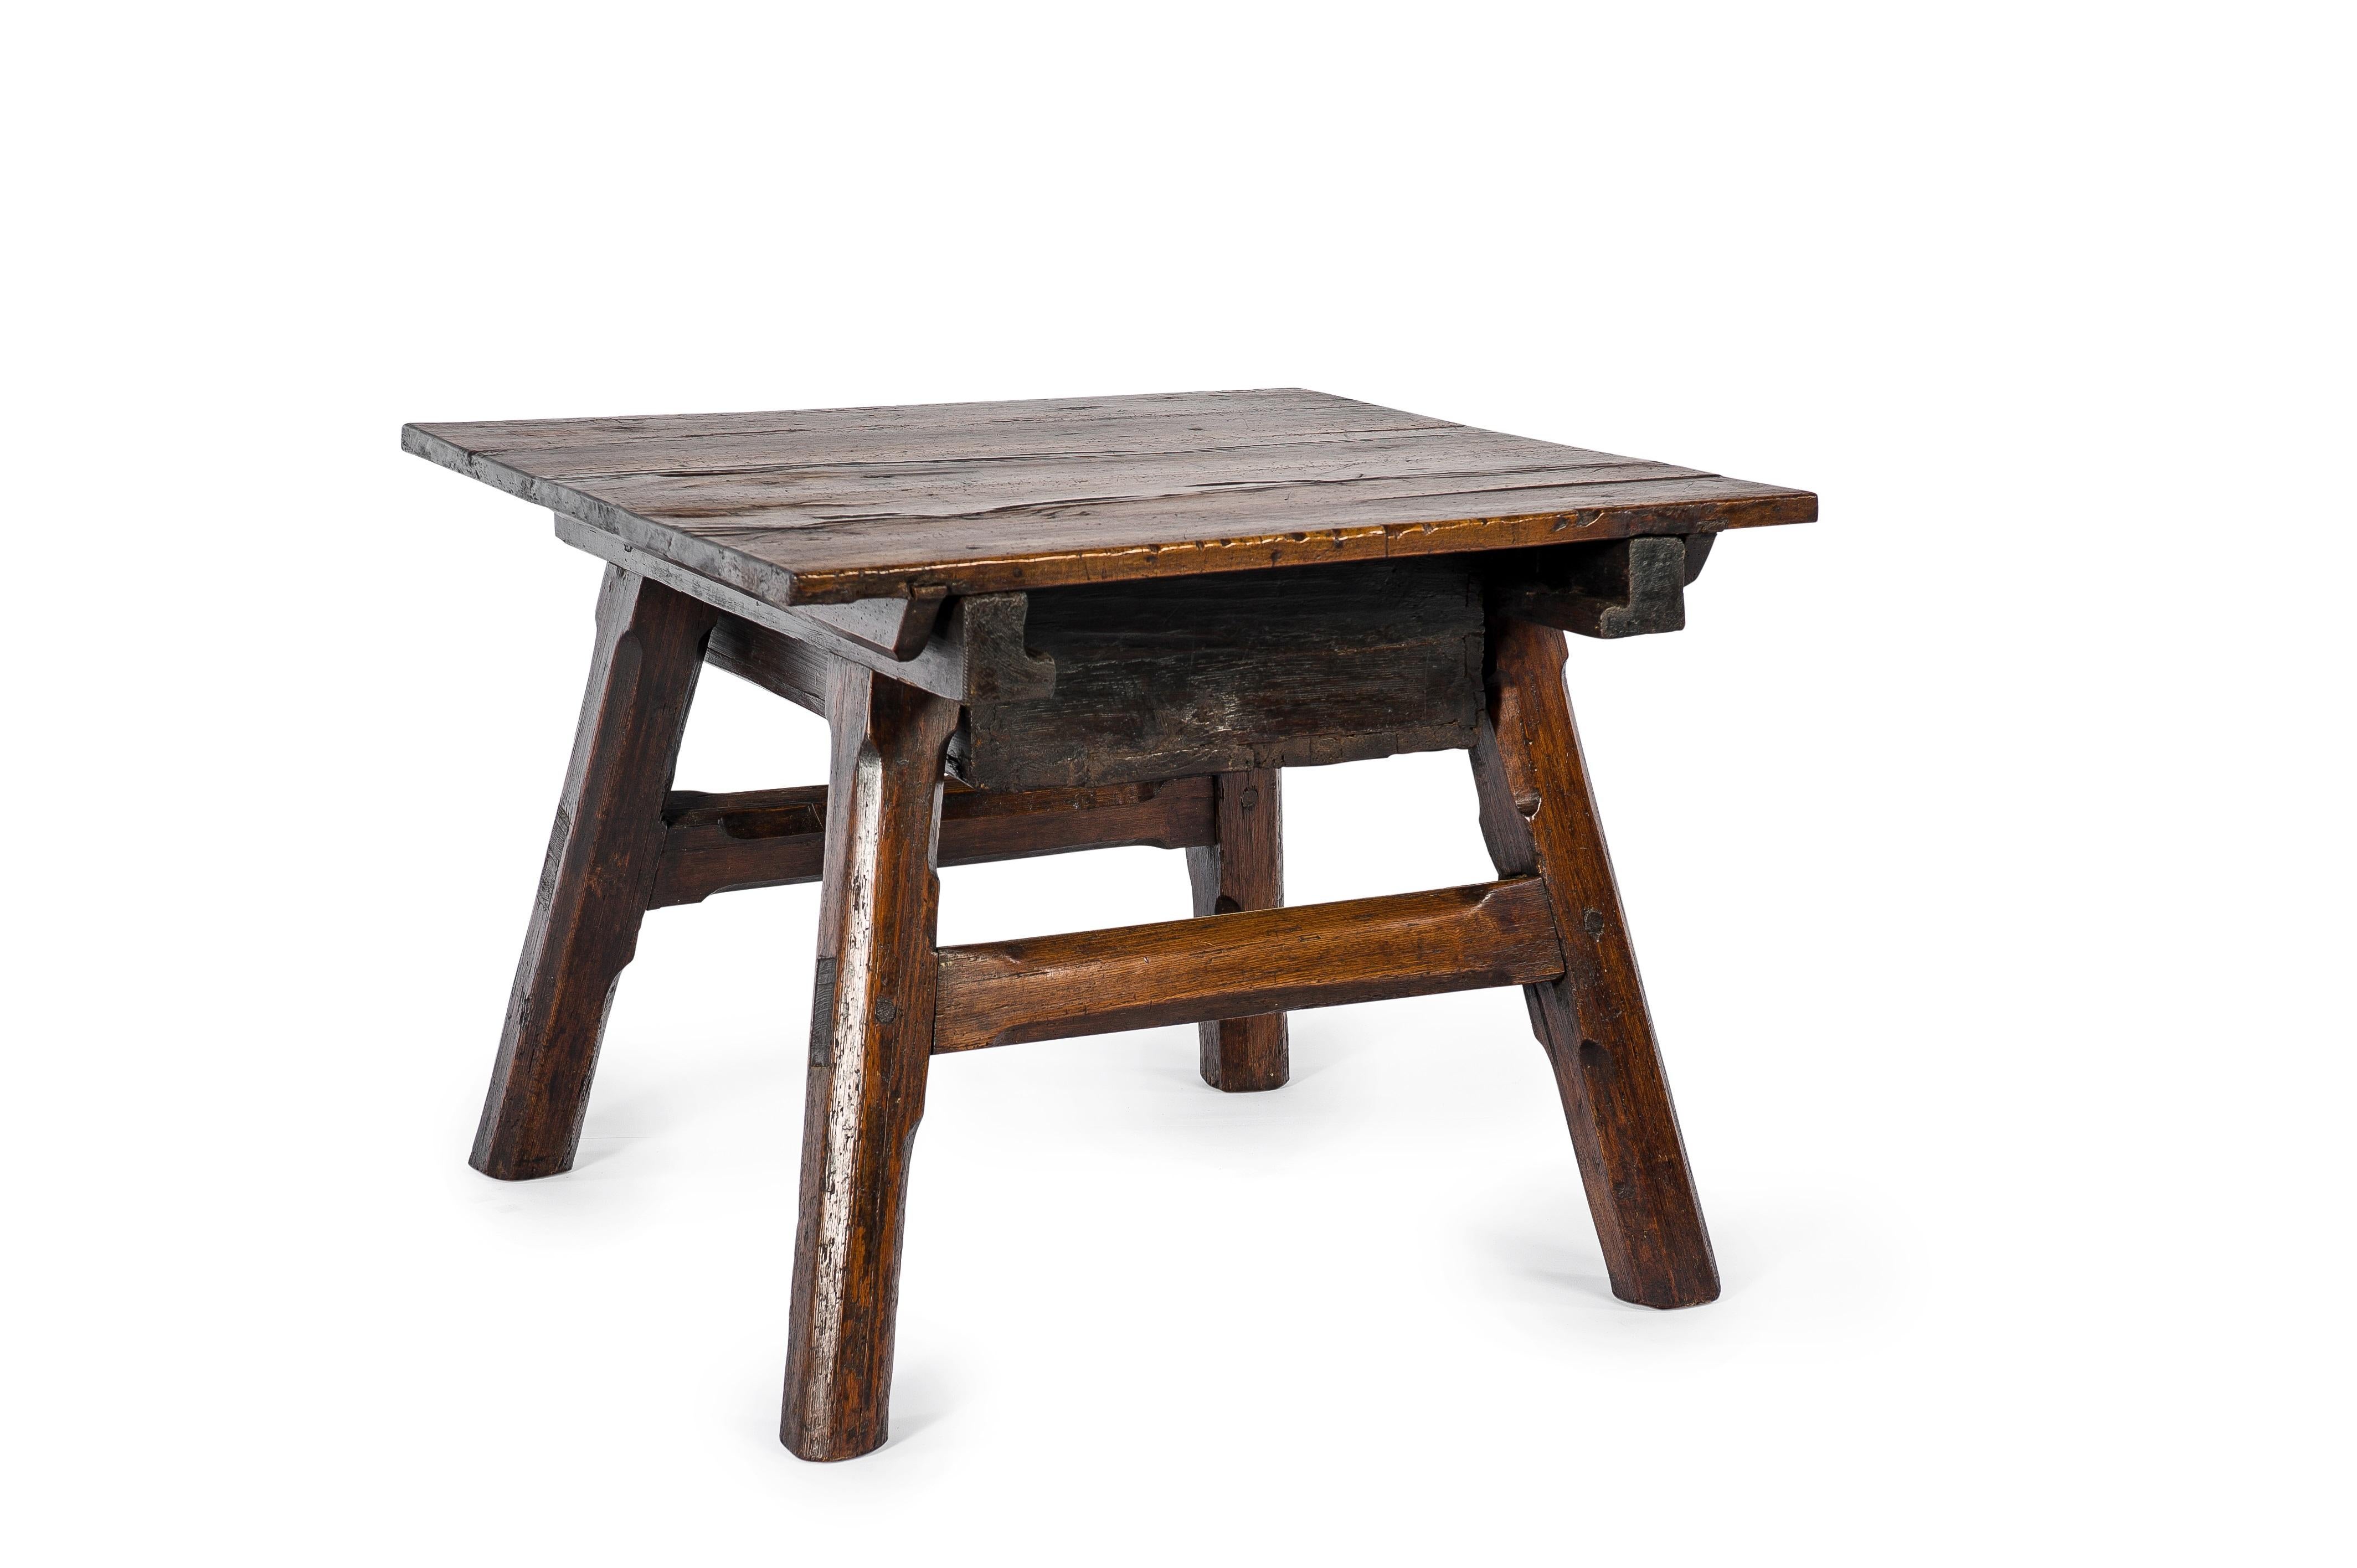 Cette belle table de banquier ou de marchand est originaire de Suisse et date d'environ 1800. Le plateau et le tiroir ont été réalisés en bois fruitier, les pieds sont en pin. La façade du tiroir a été décorée de nombreux cercles. La table a une